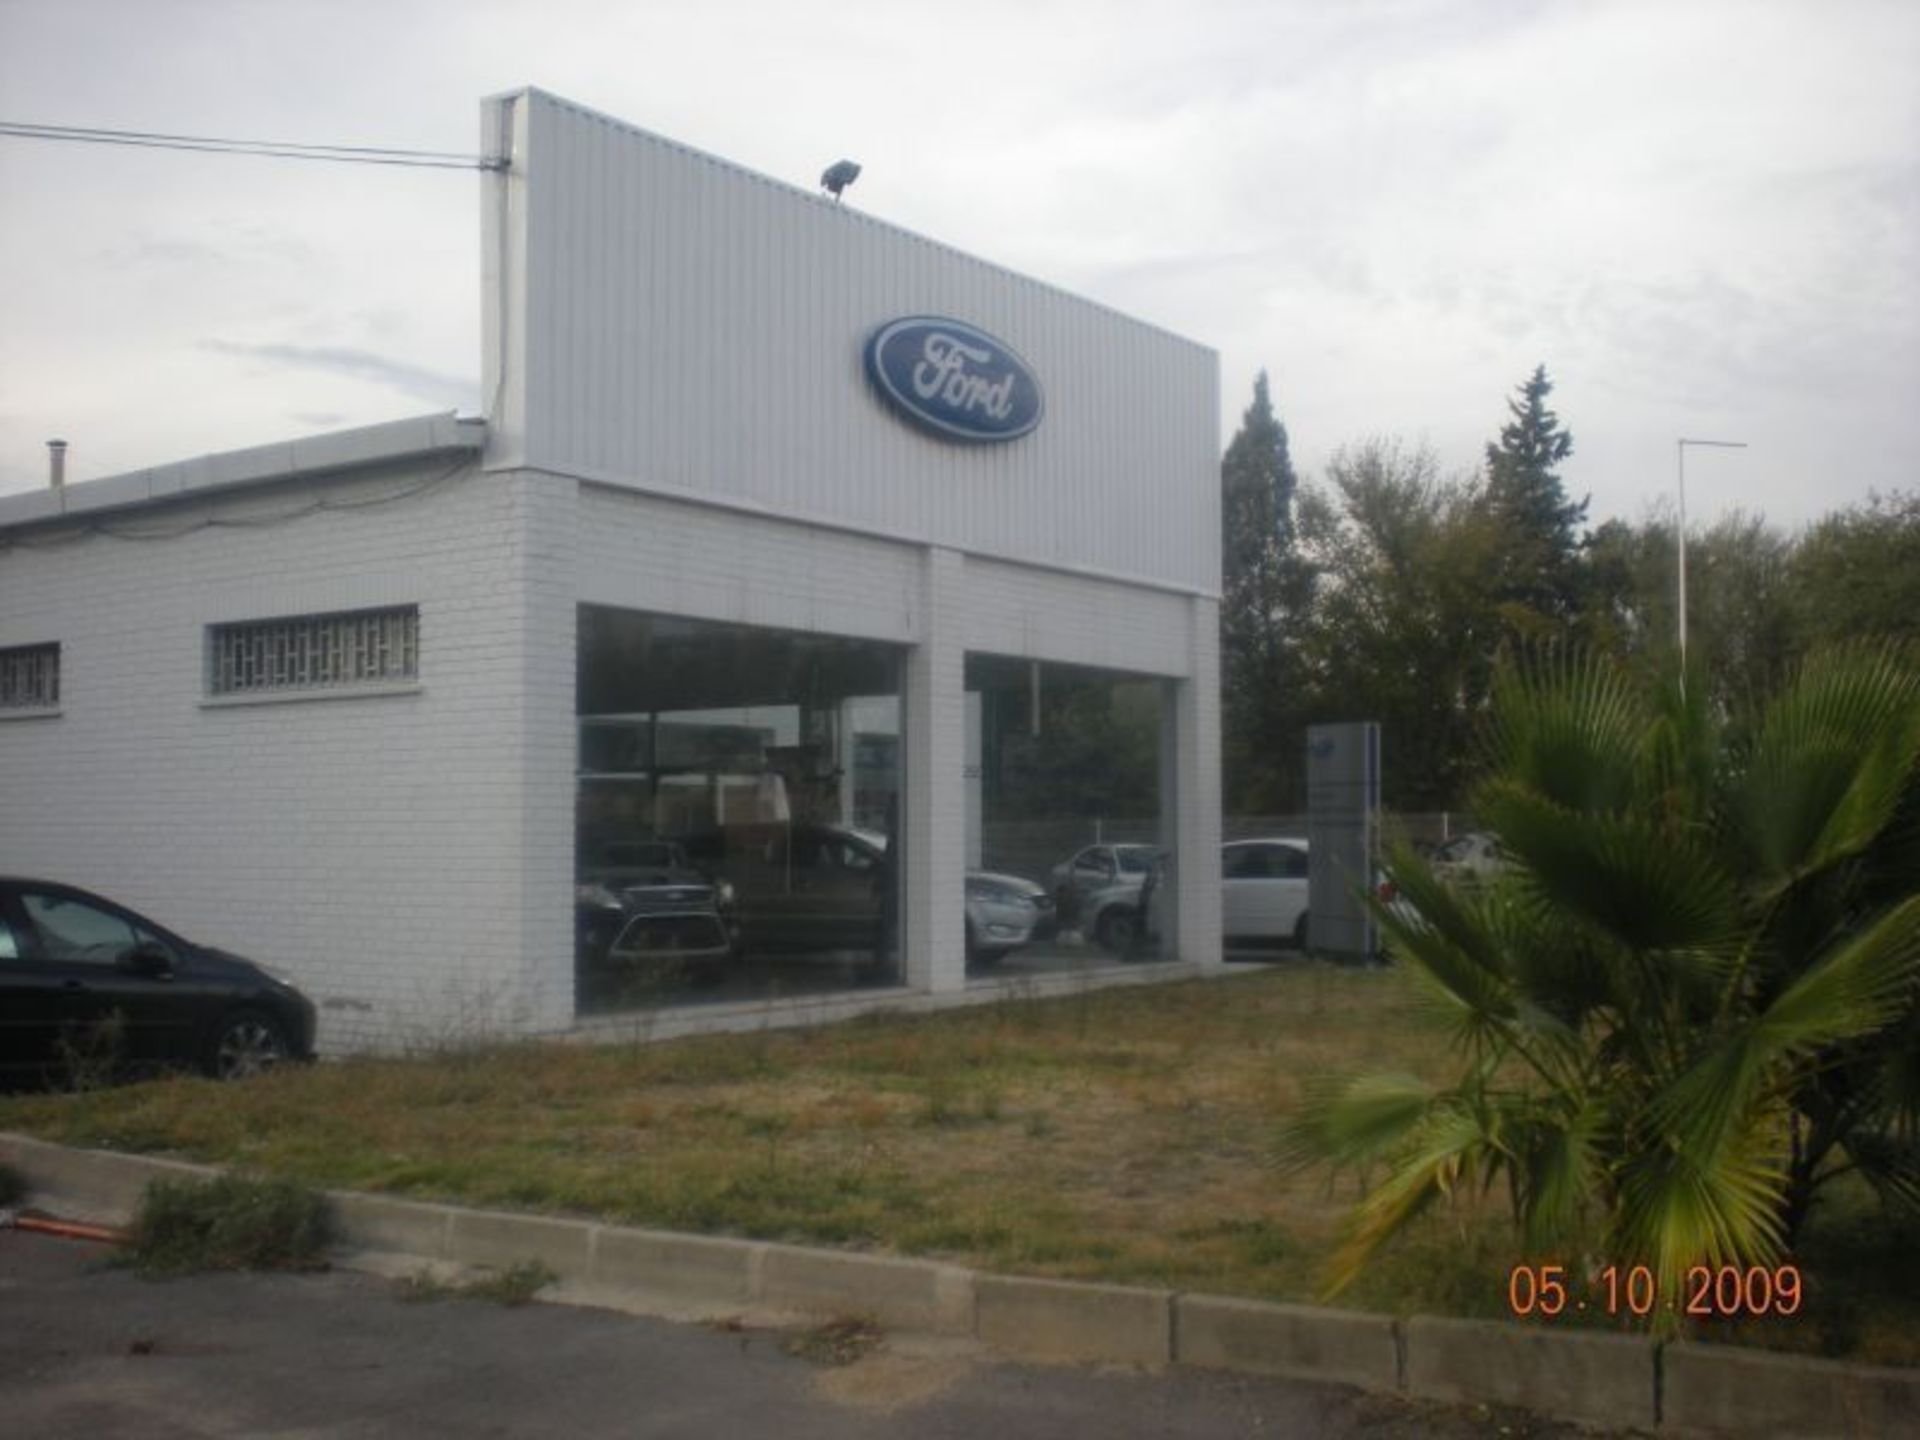 Proyecto de apertura de taller y venta de coches Ford en Fuenlabrada